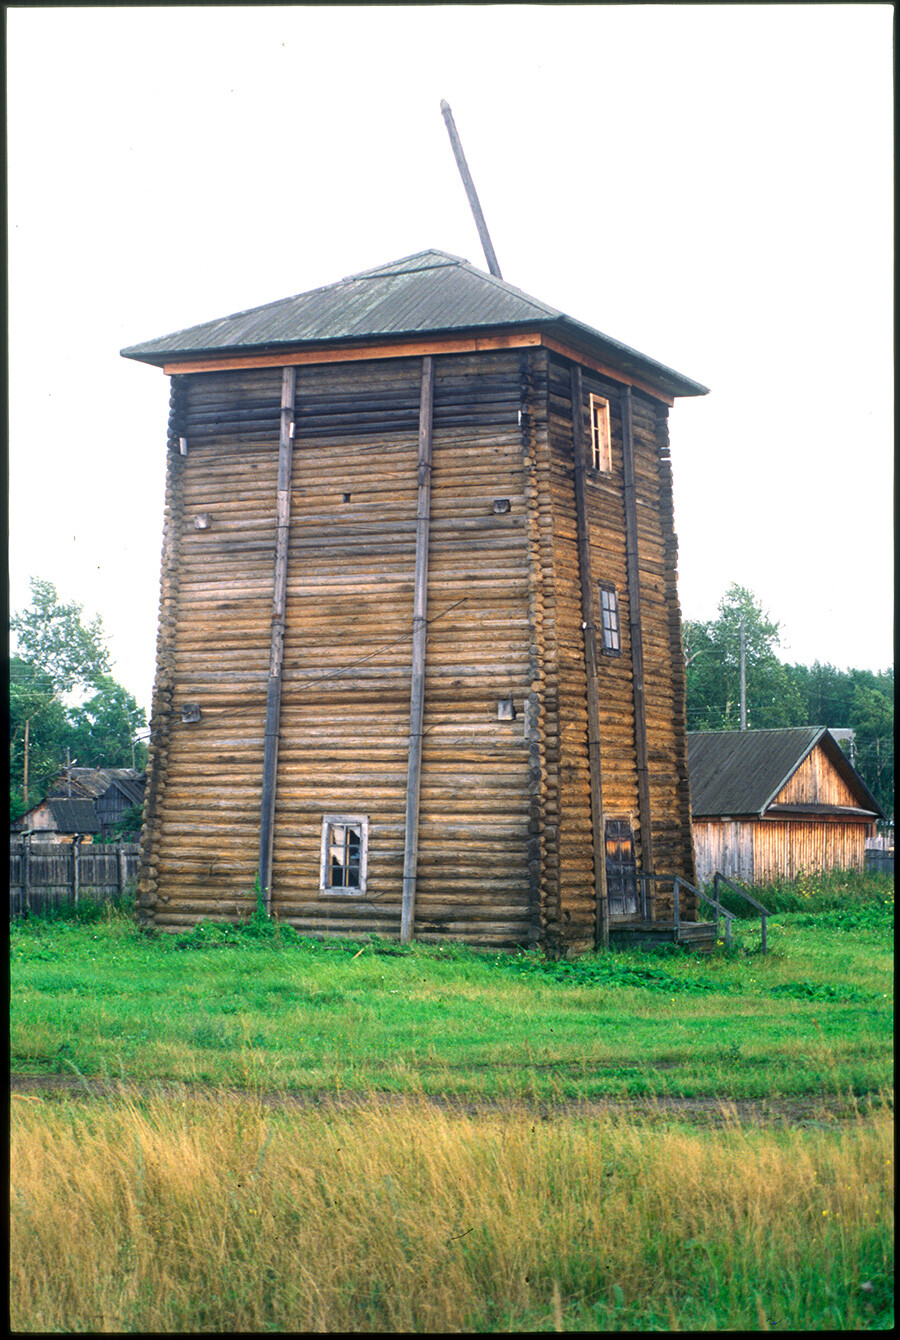  Ryazantsev Salt Works, Alexander brine pumping tower. August 12, 2000